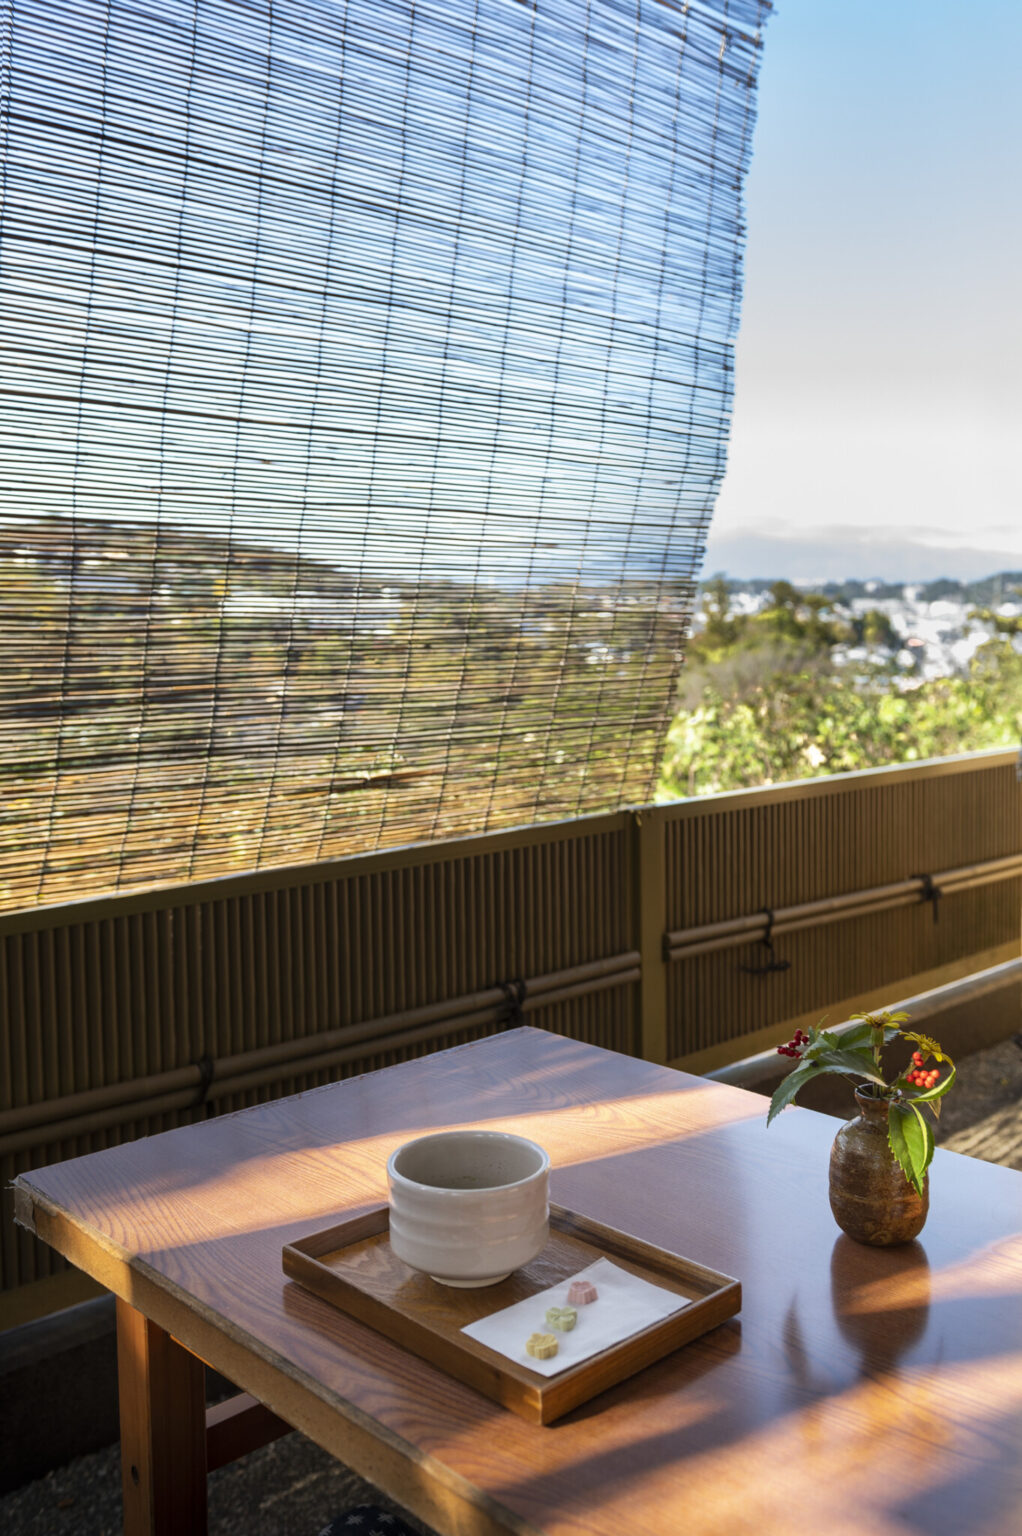 坐禅を終え境内を参拝したら、鎌倉の景色が一望できる弁天茶屋でひと休みしてみては。130段ほどある階段を上るので、いい運動にもなるはず。